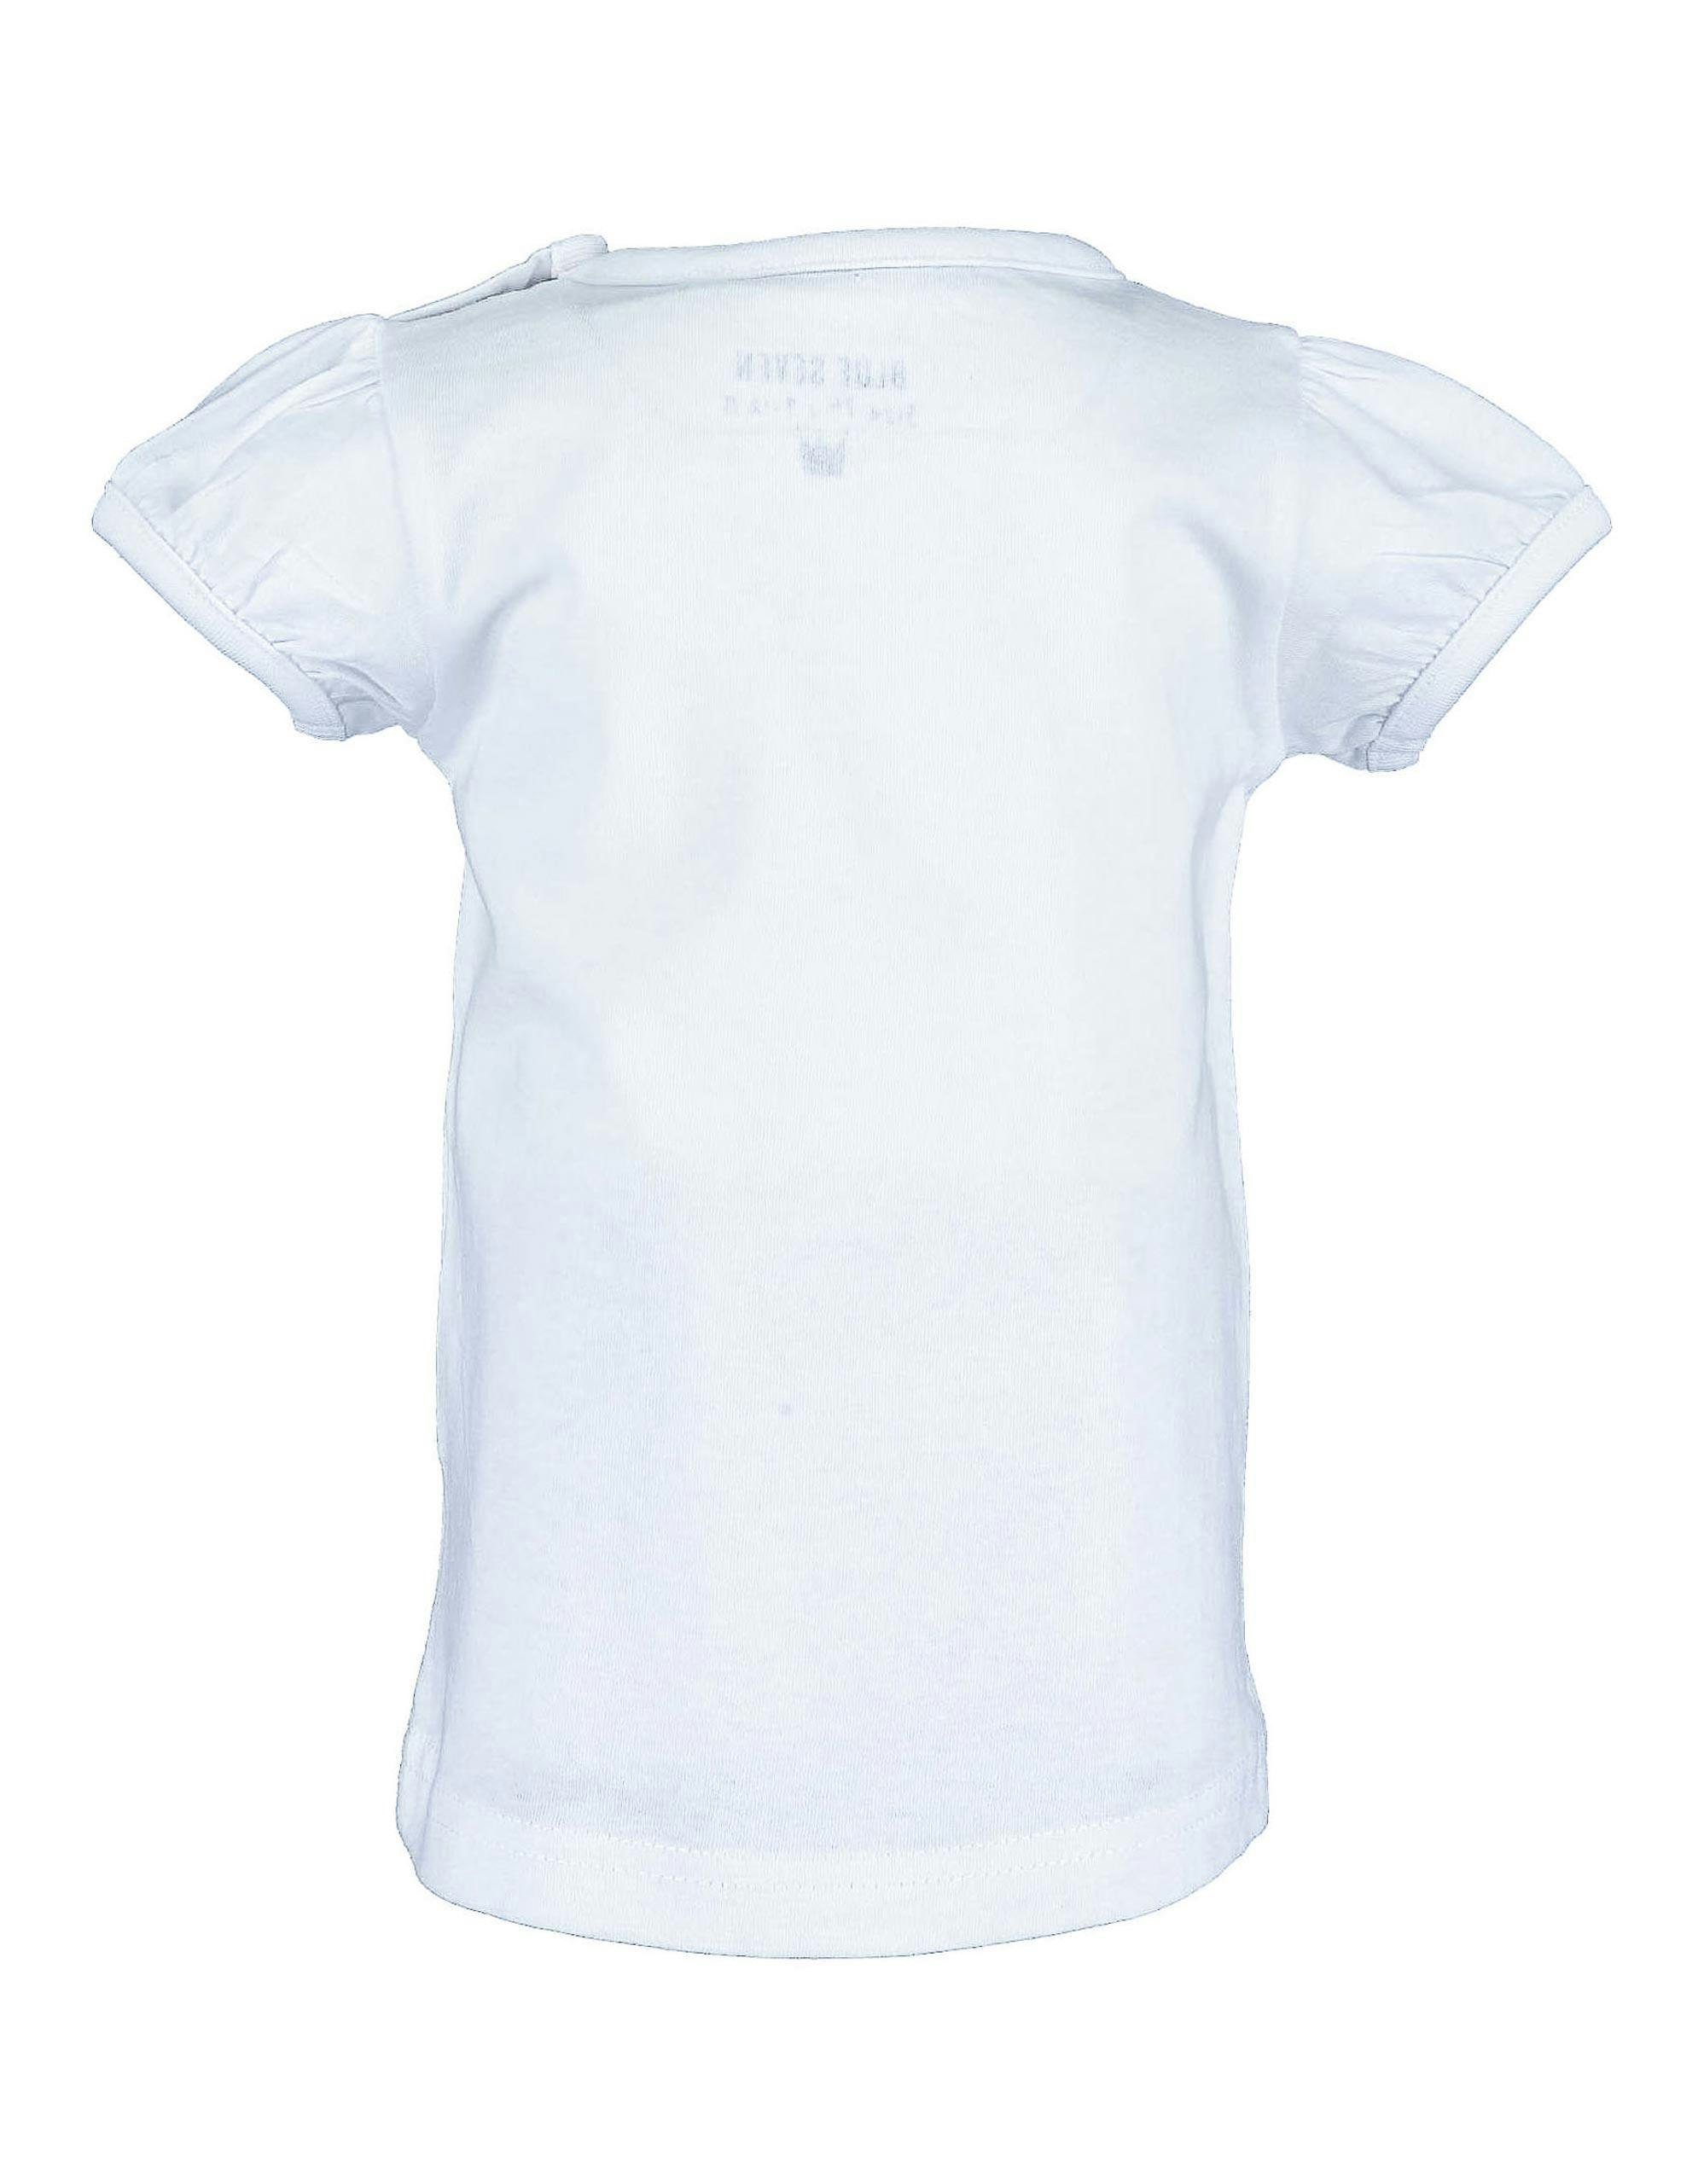 NoName T-Shirt Rabatt 92 % DAMEN Hemden & T-Shirts Rüschen Blau/Weiß 38 